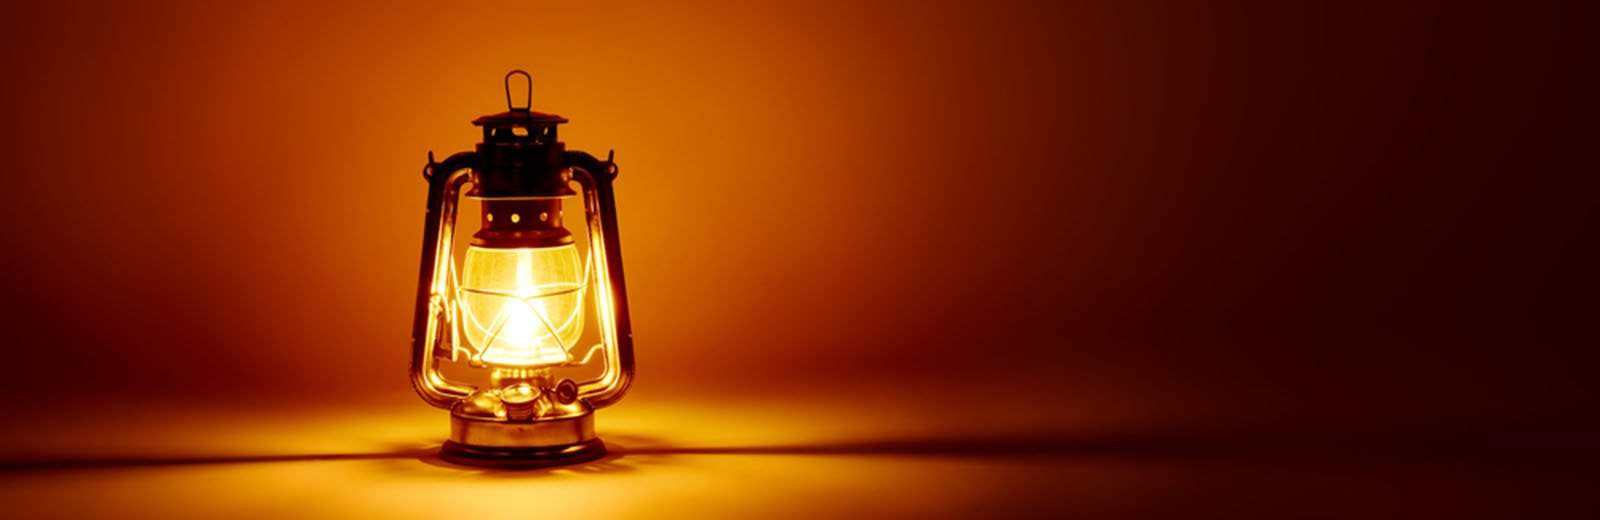 Mason Jar Oil Lamp | 133 Homesteading Skills